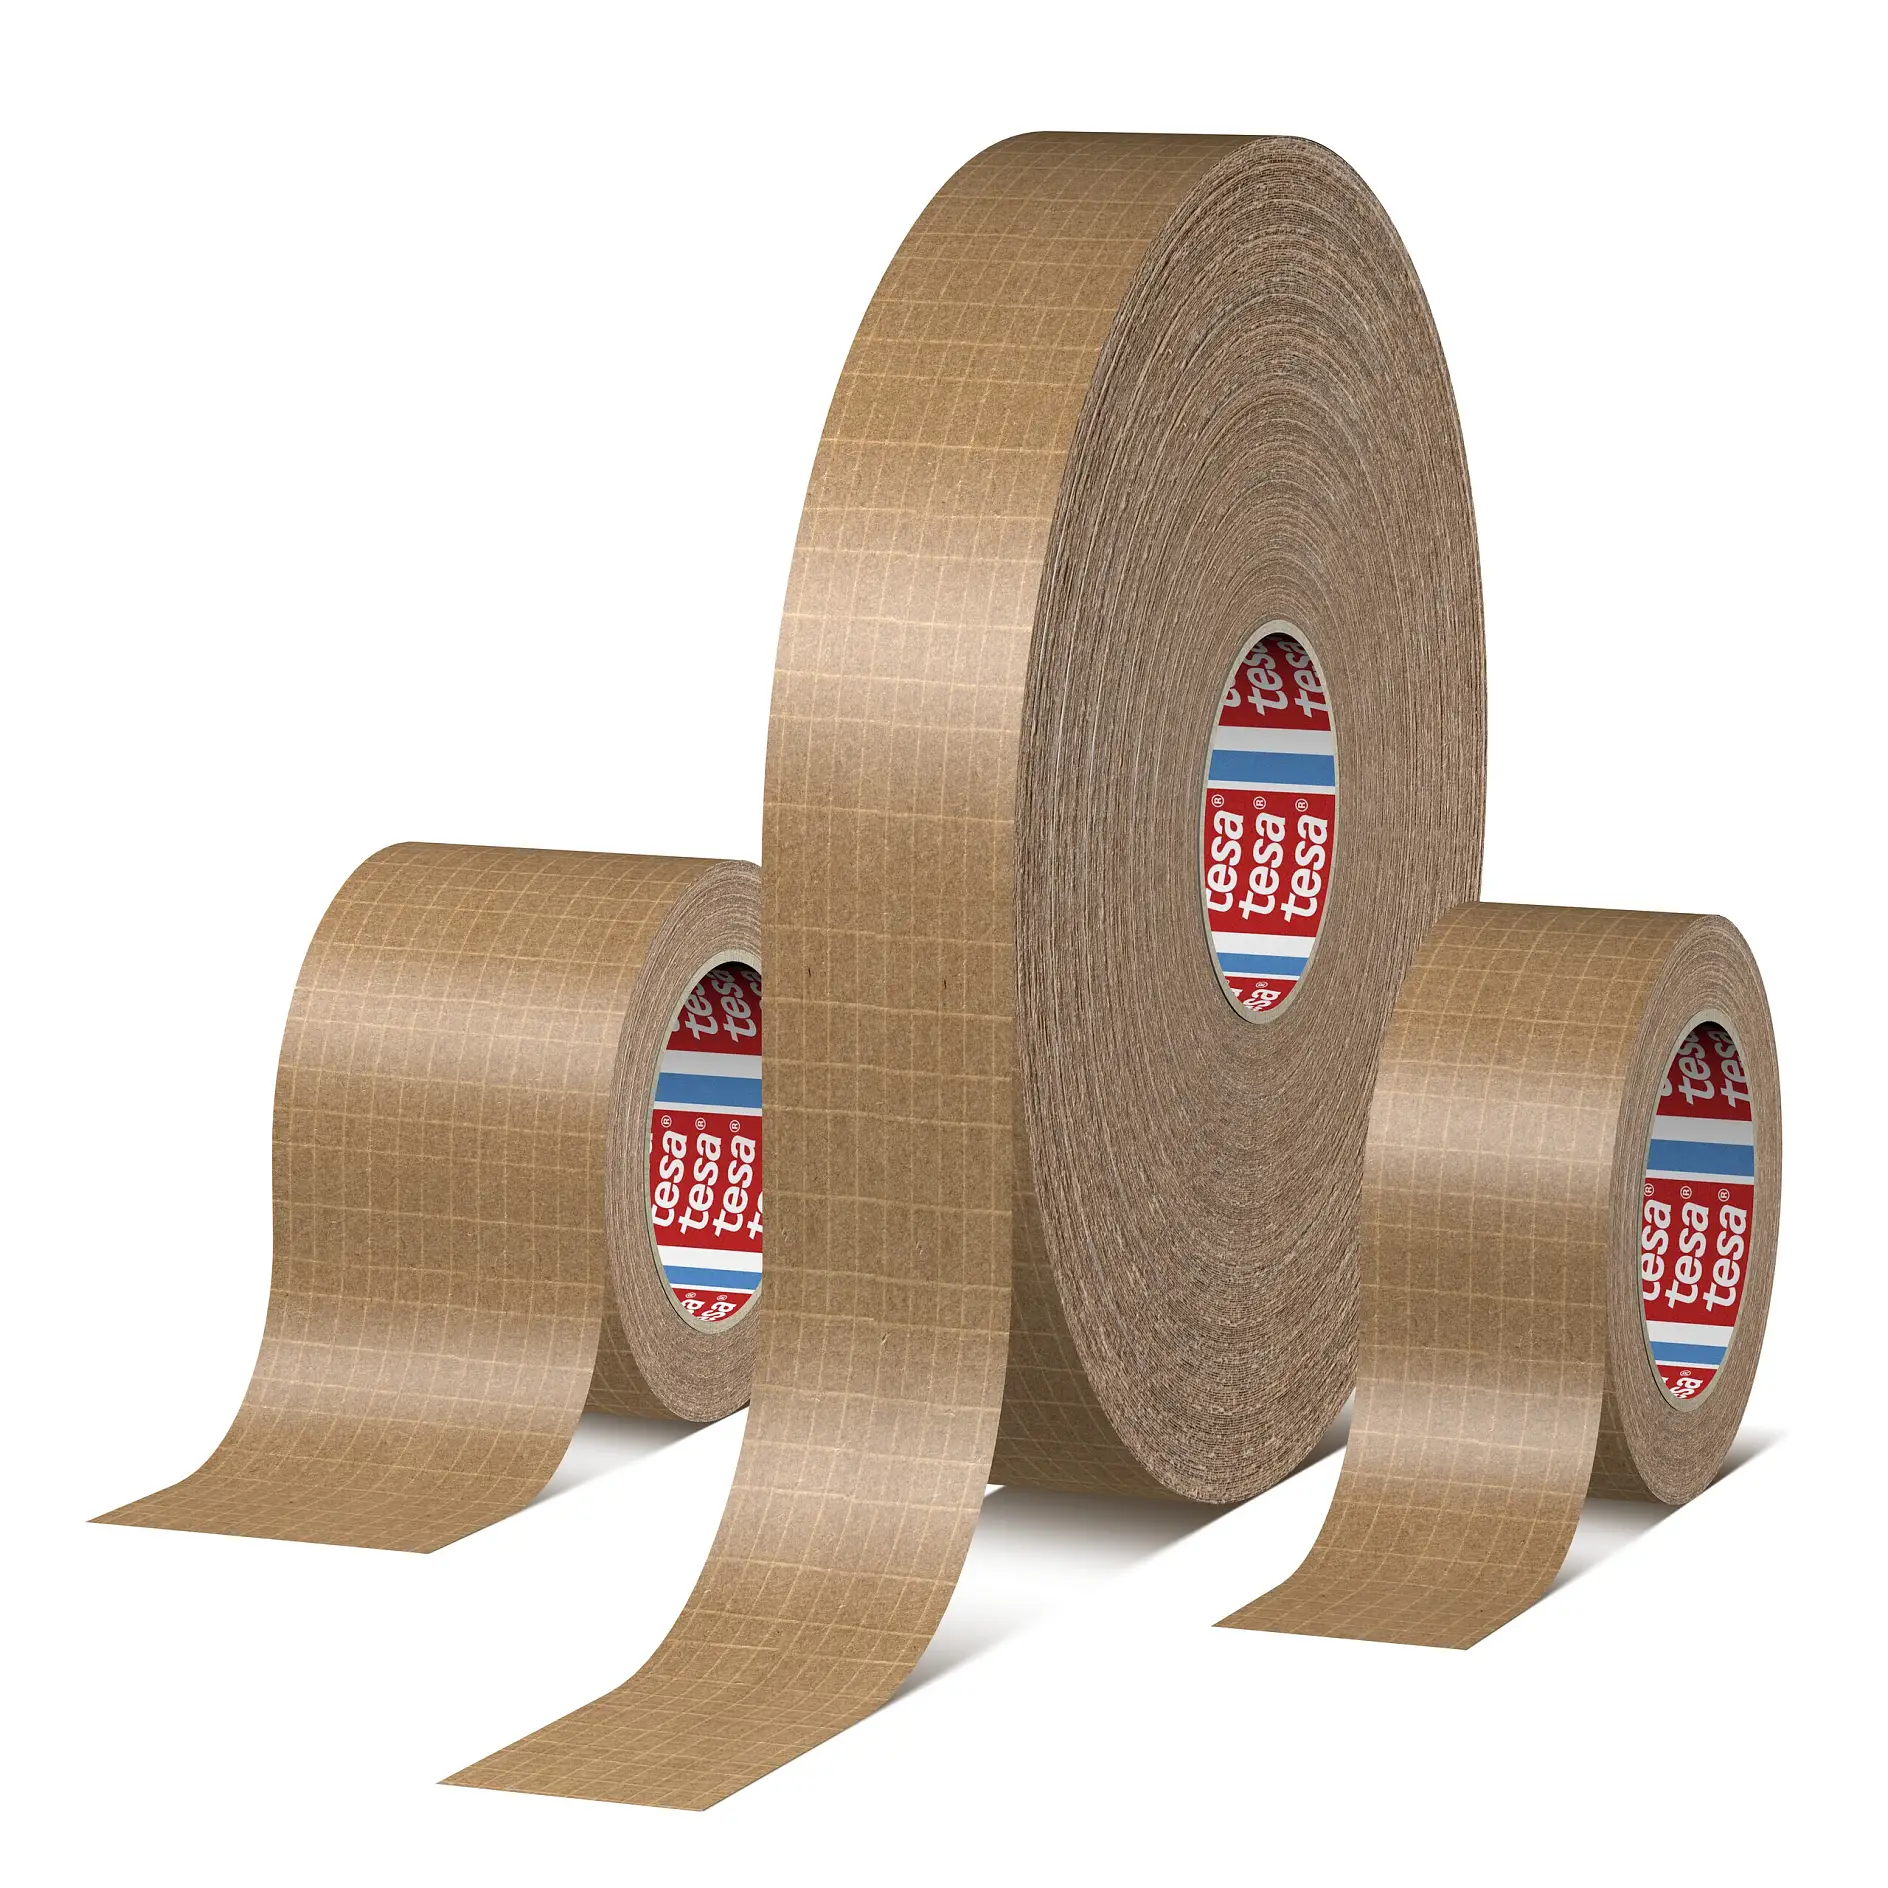 tesa-60013-self-adhesive-reinforced-paper-packaging-tape-01-ap-cms